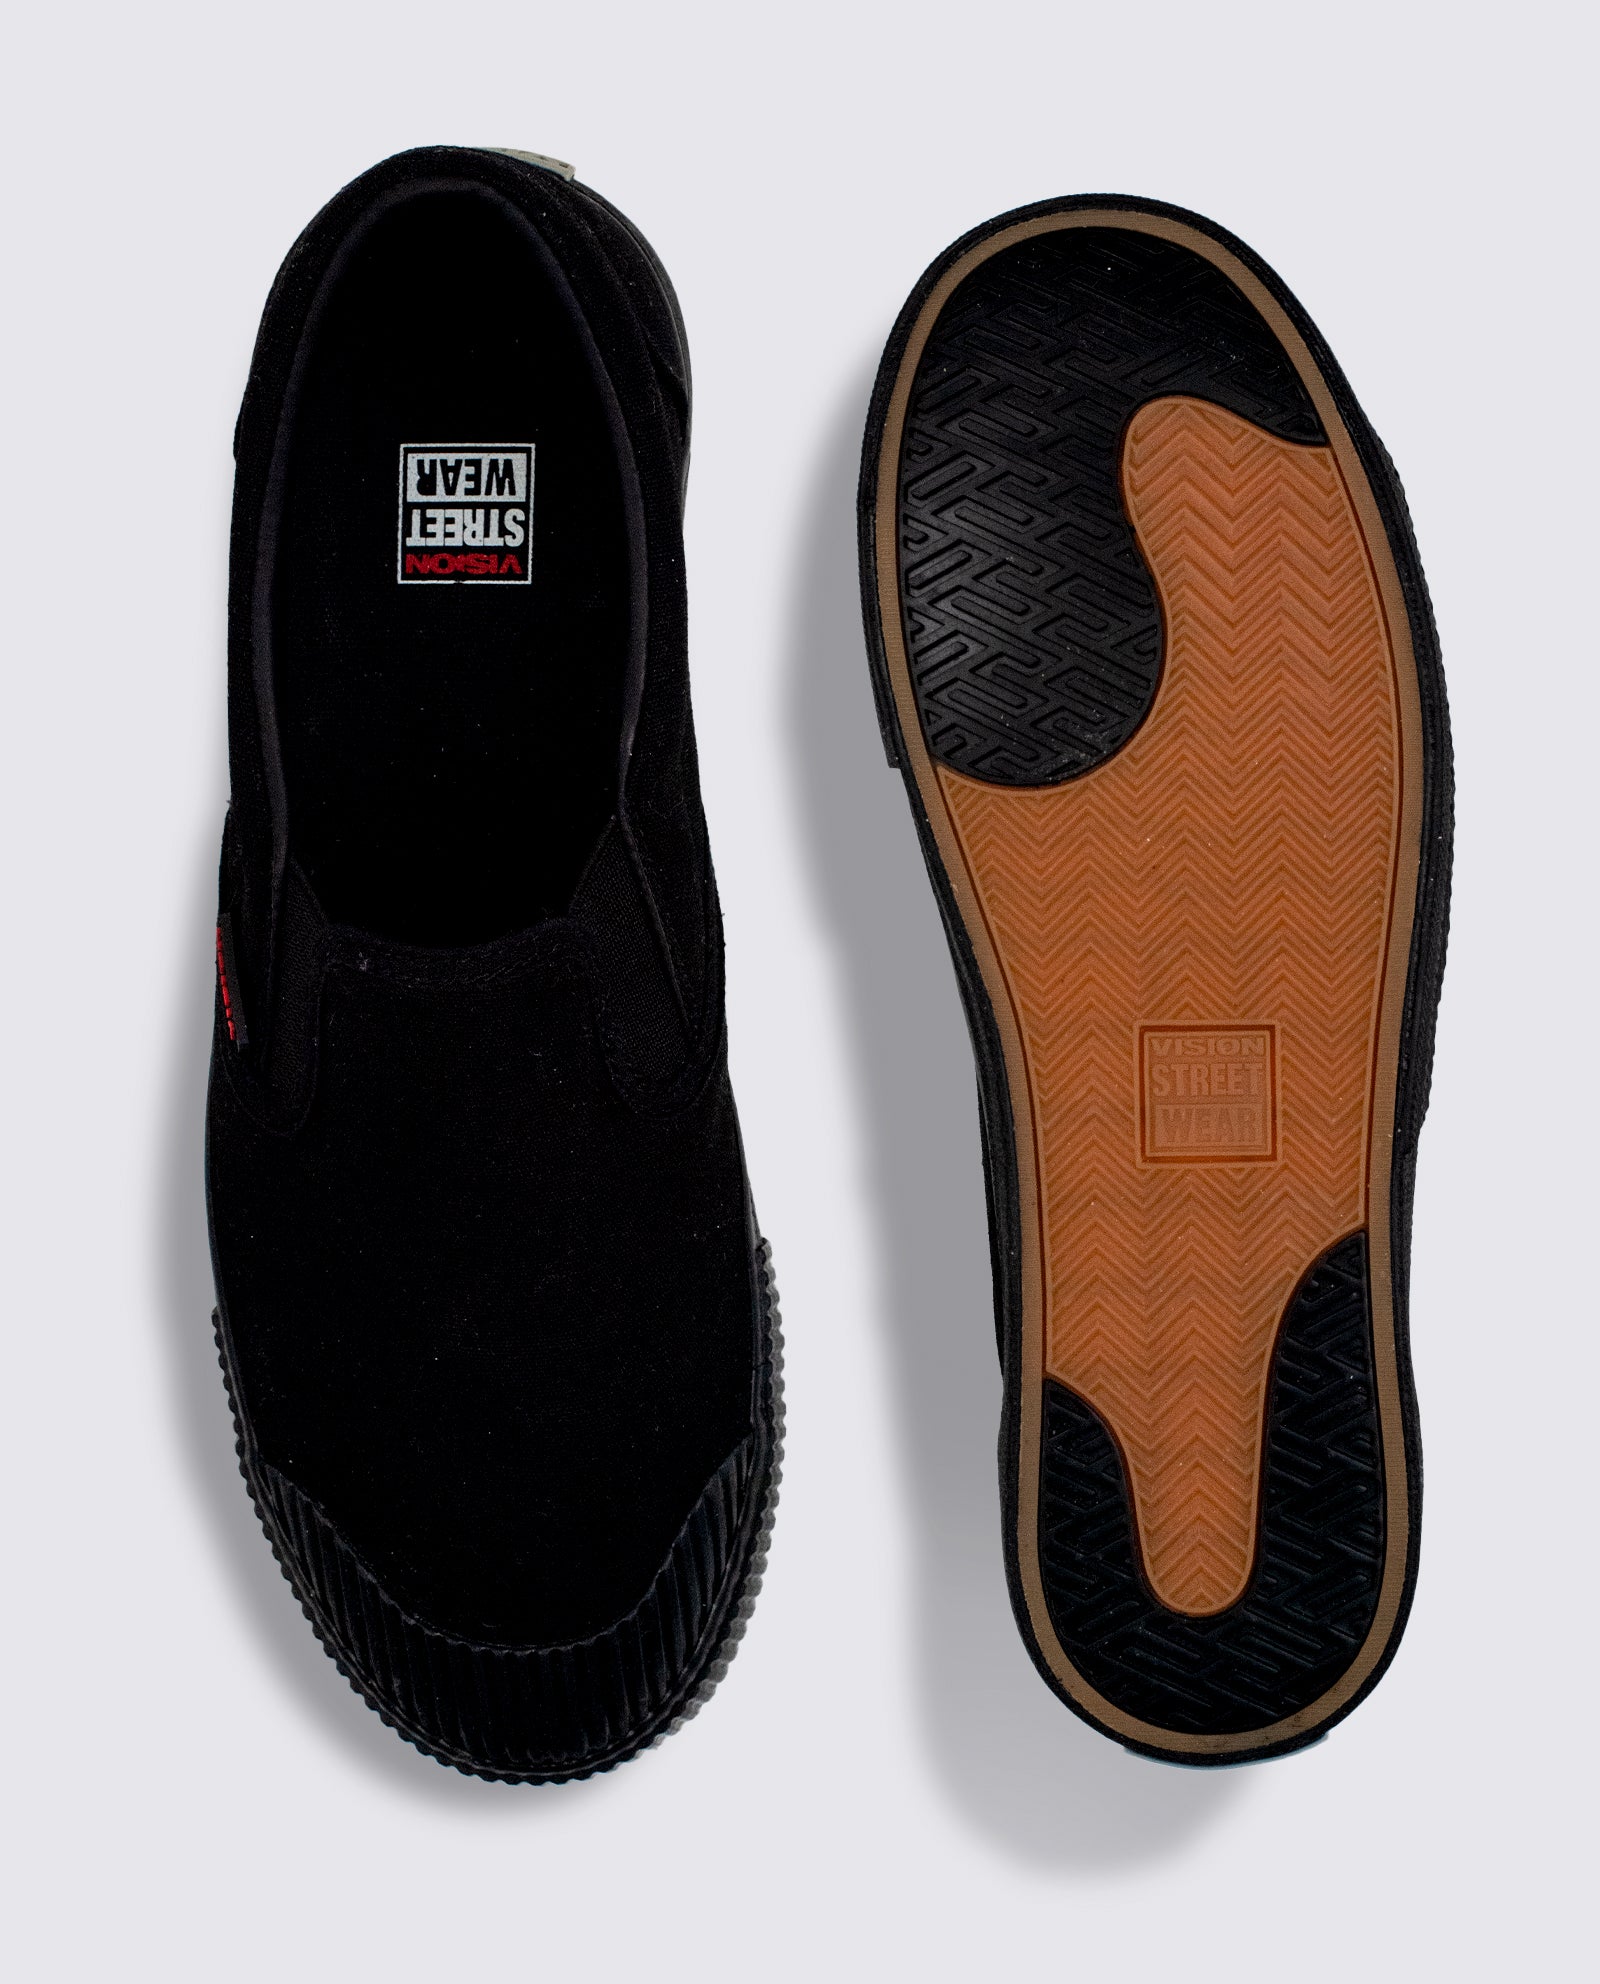 Black Canvas Shoes for Men's